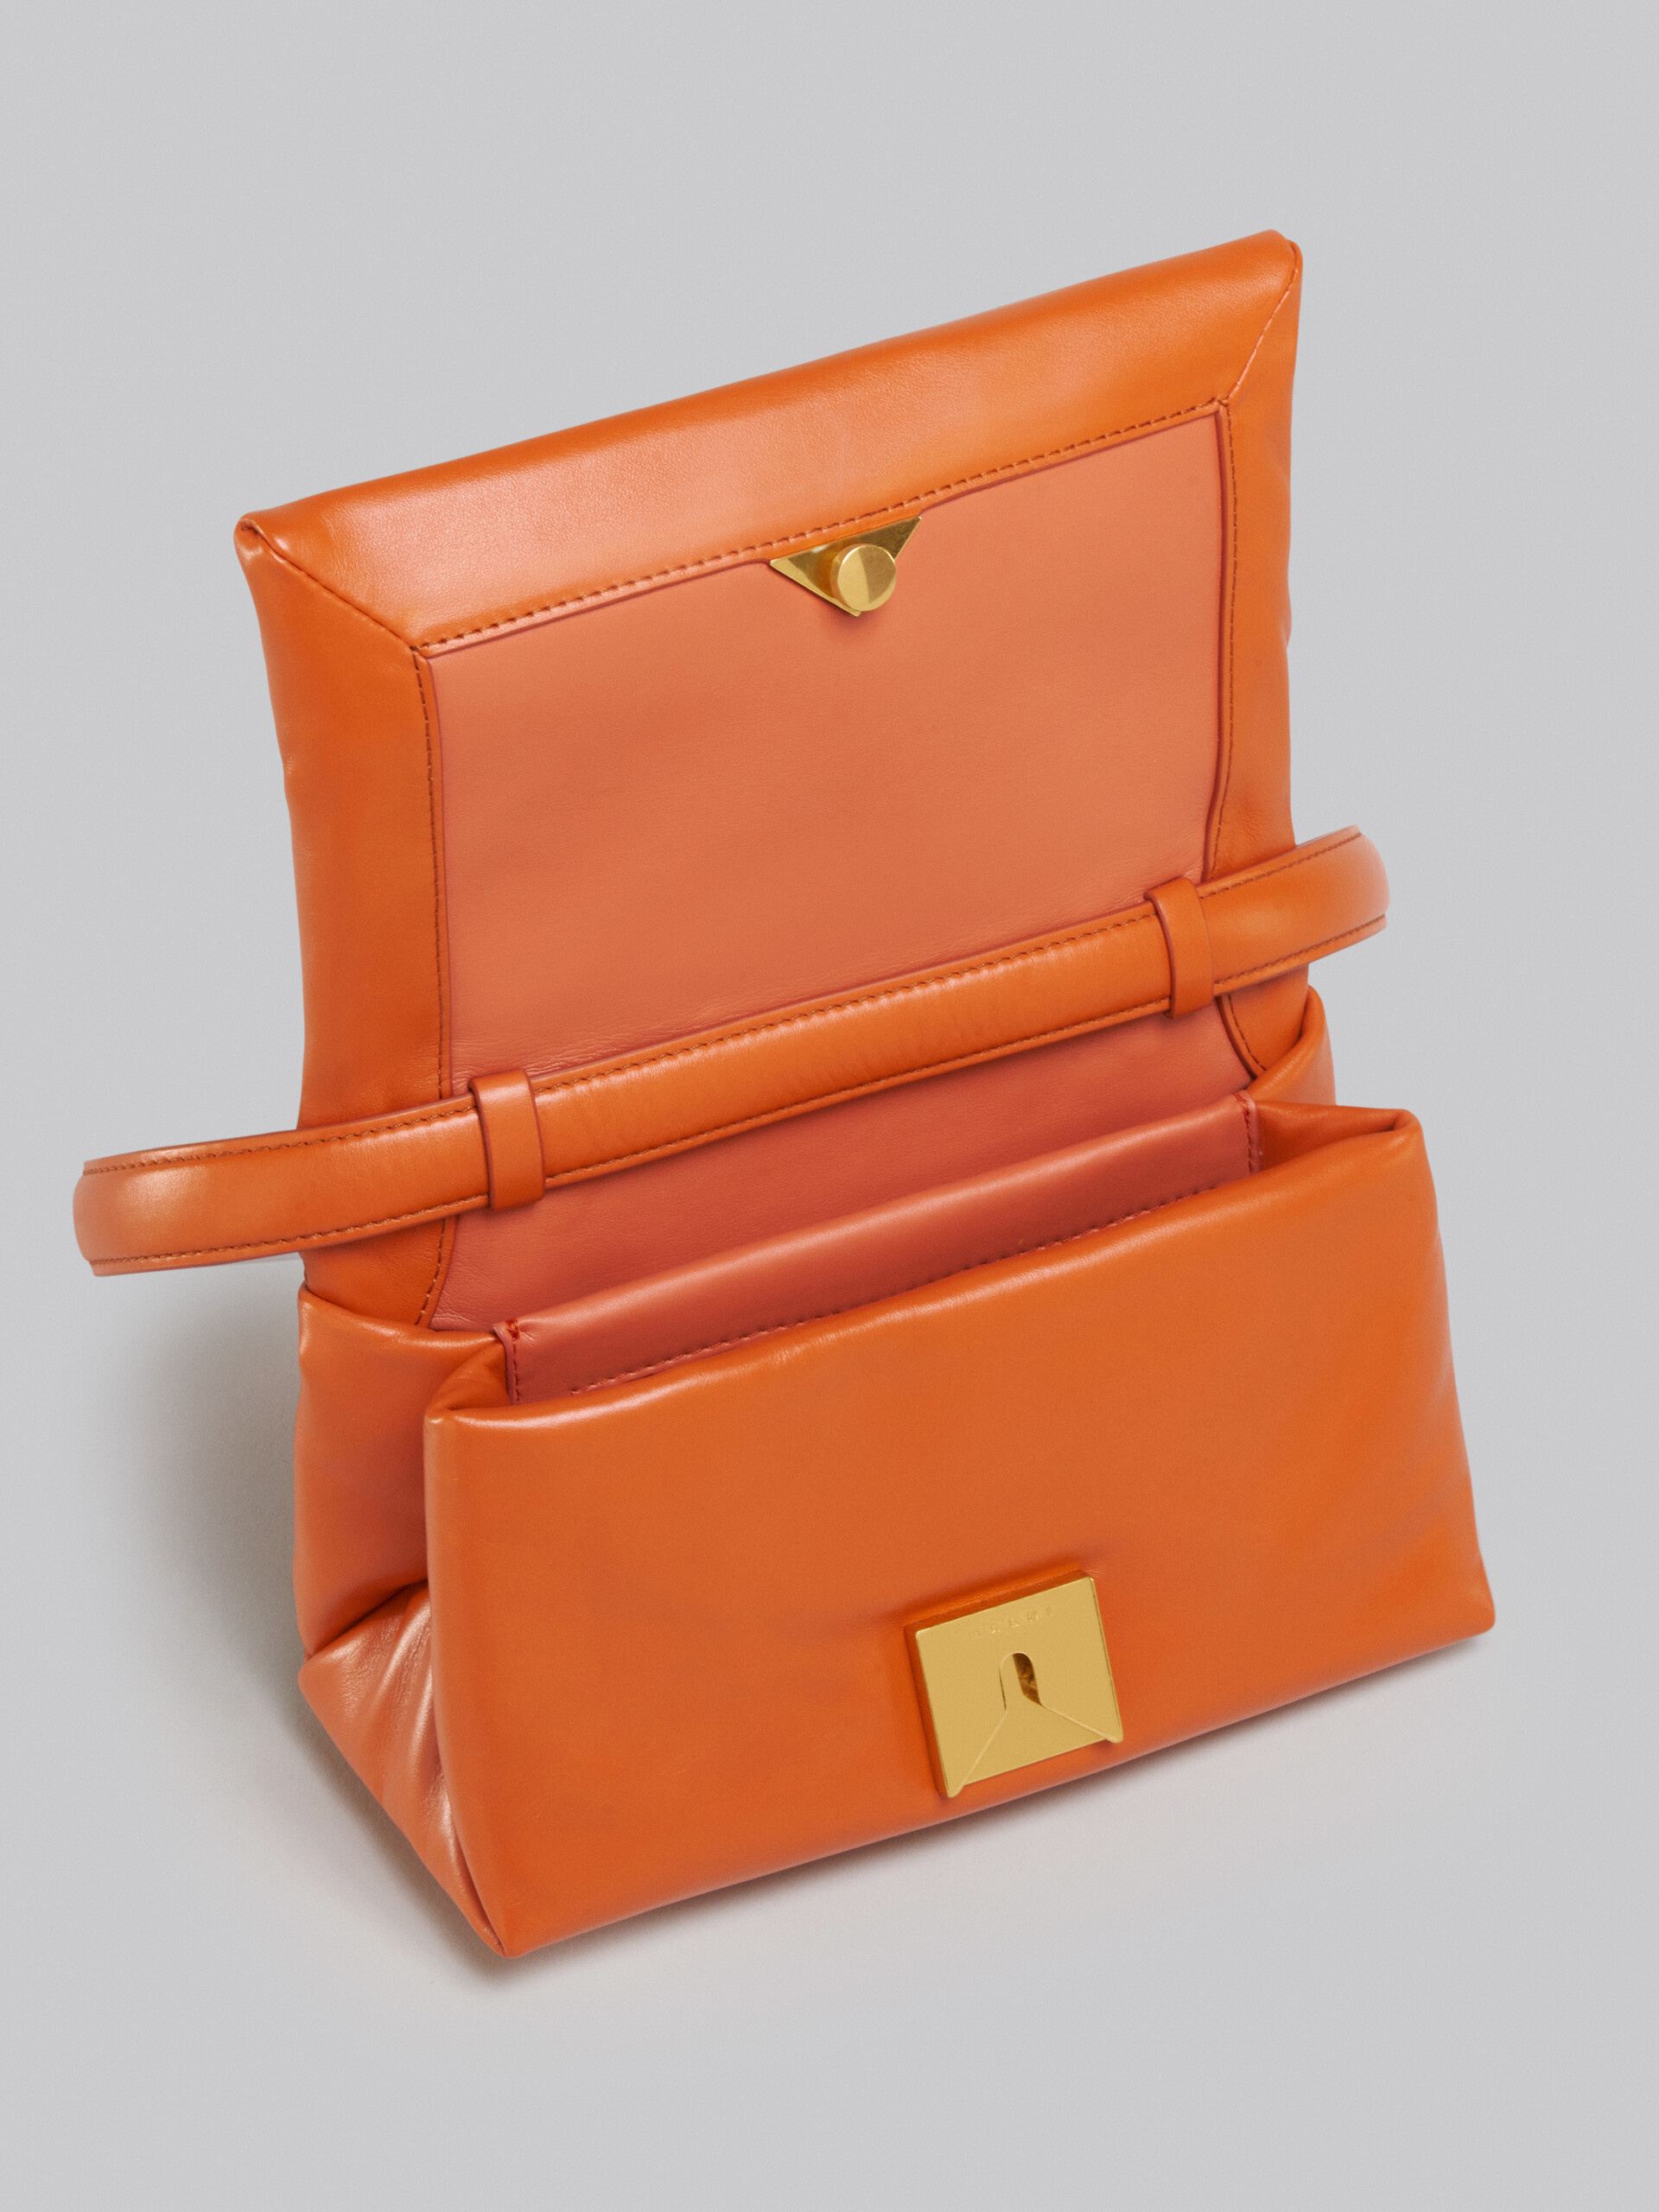 Small orange calsfkin Prisma bag - Shoulder Bag - Image 4